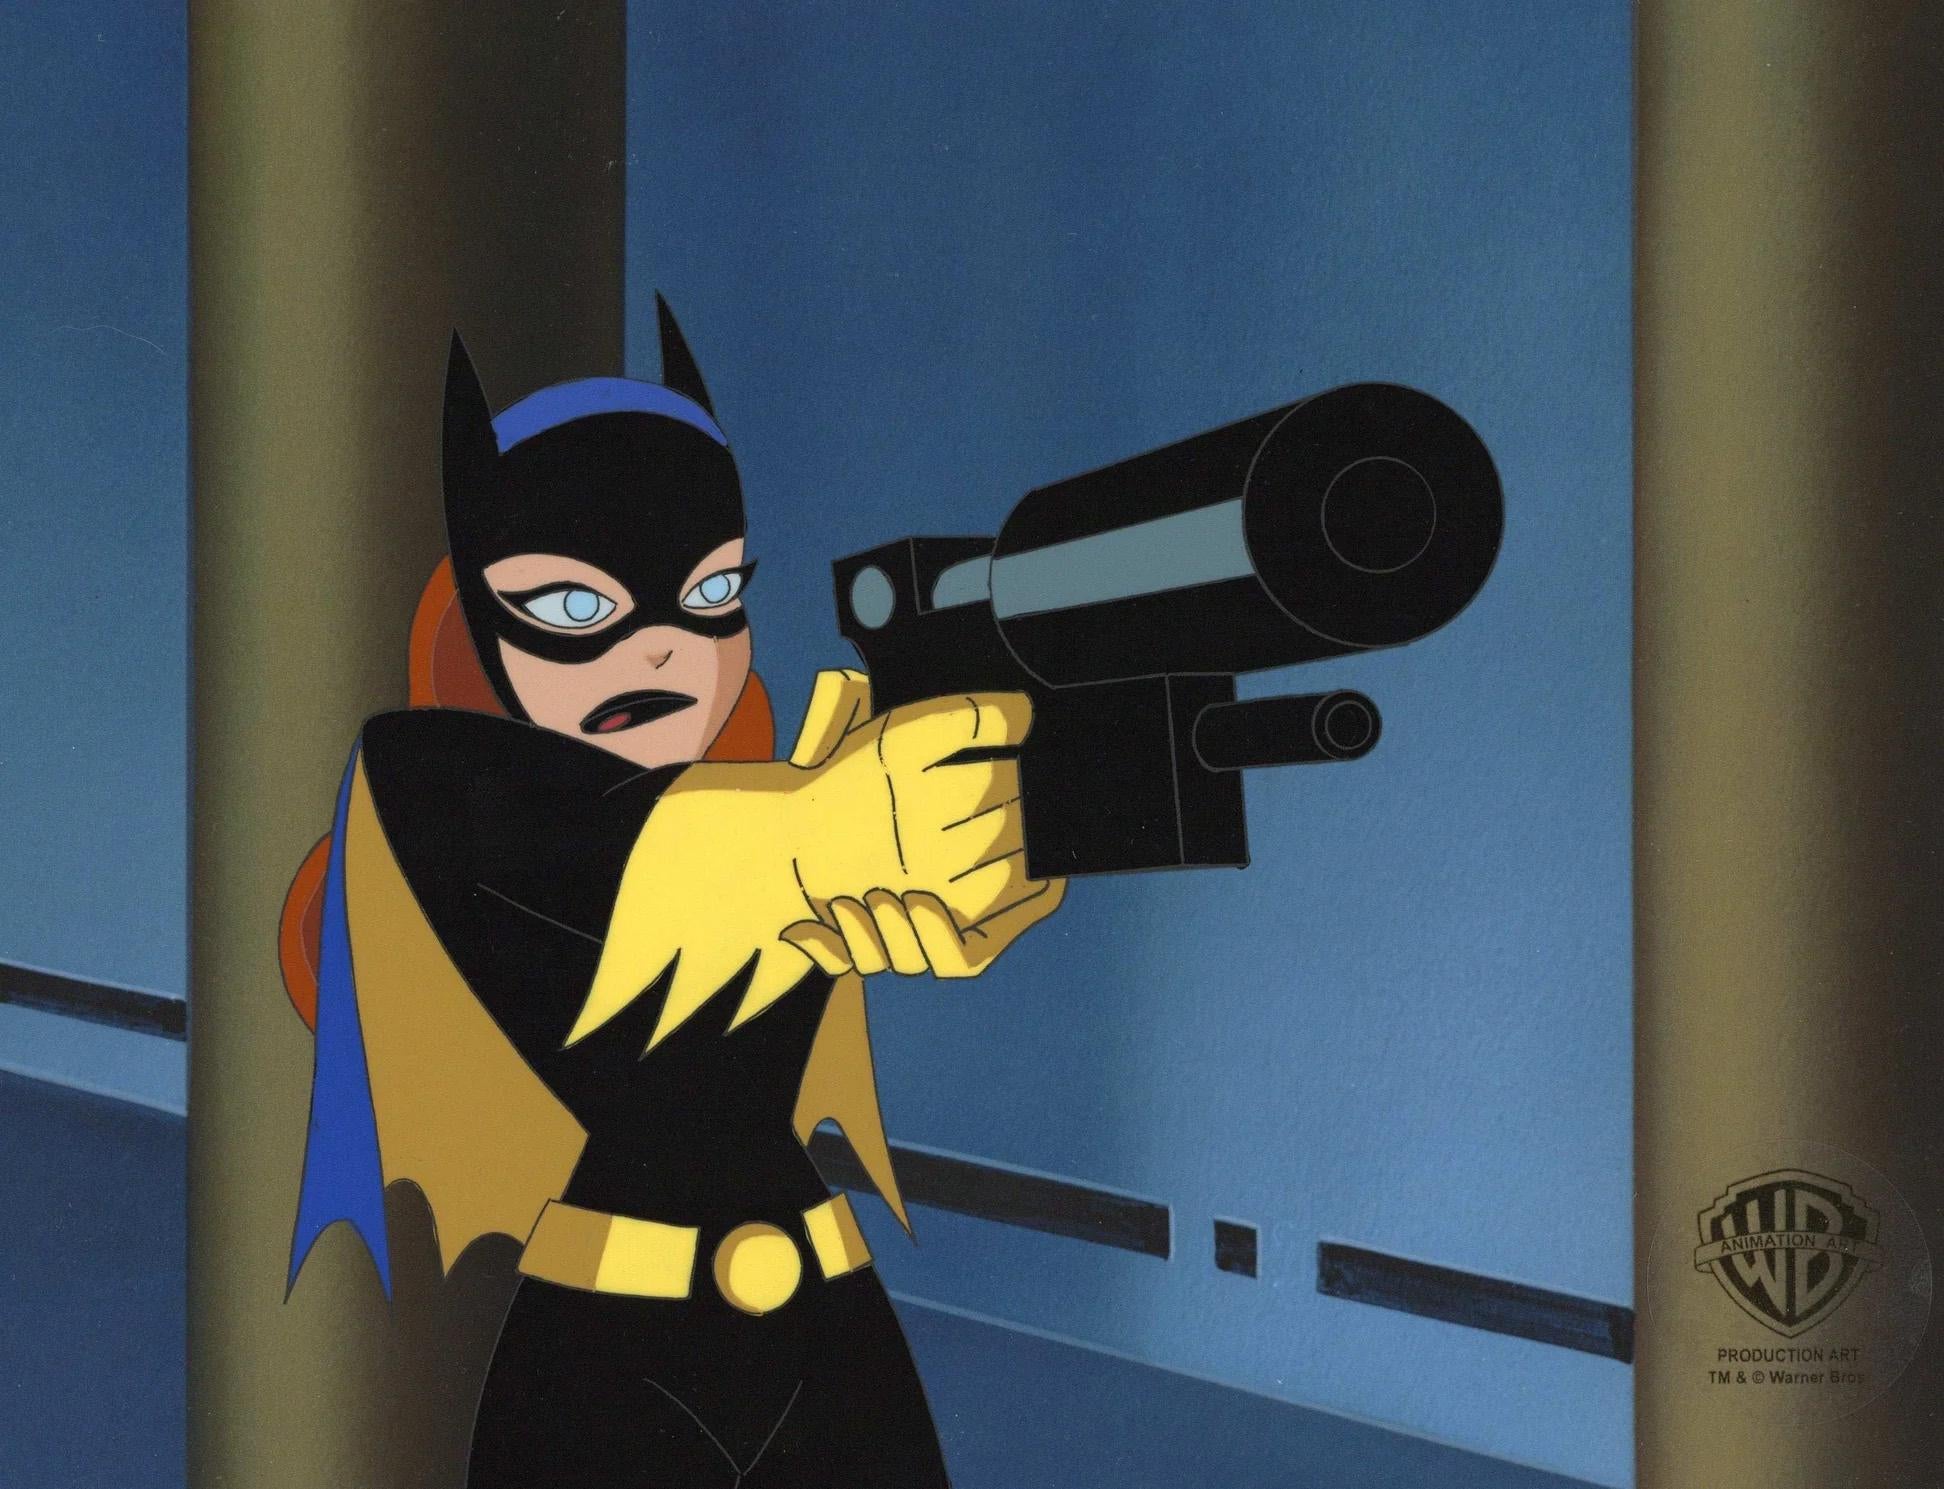 The New Batman Adventures Original Production Cel: Batgirl - Art by DC Comics Studio Artists